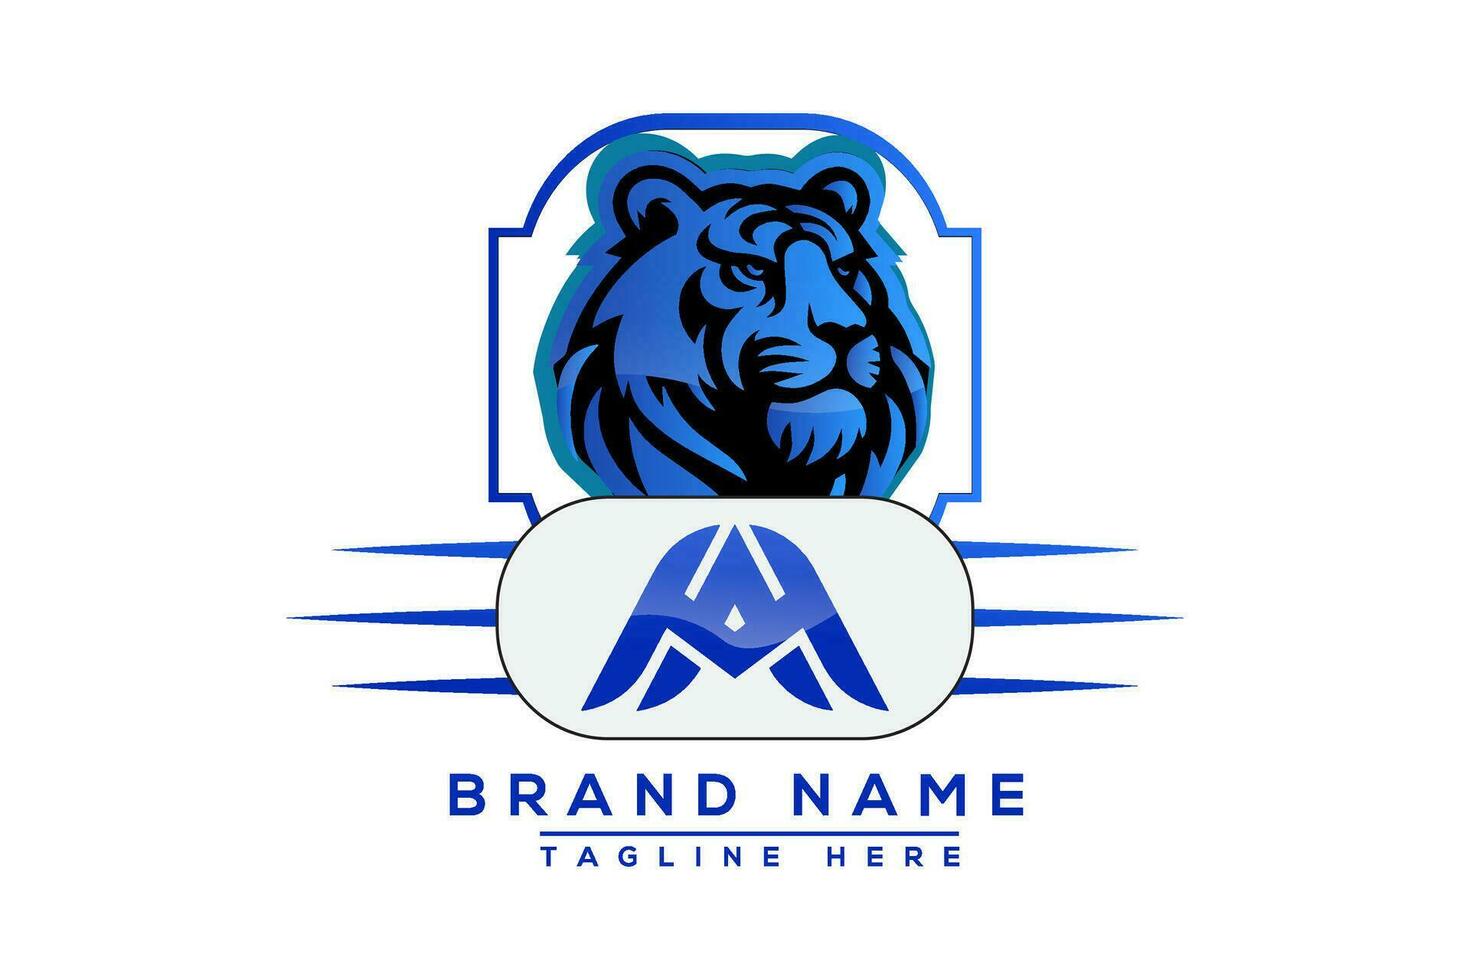 un m tigre logo bleu conception. vecteur logo conception pour entreprise.